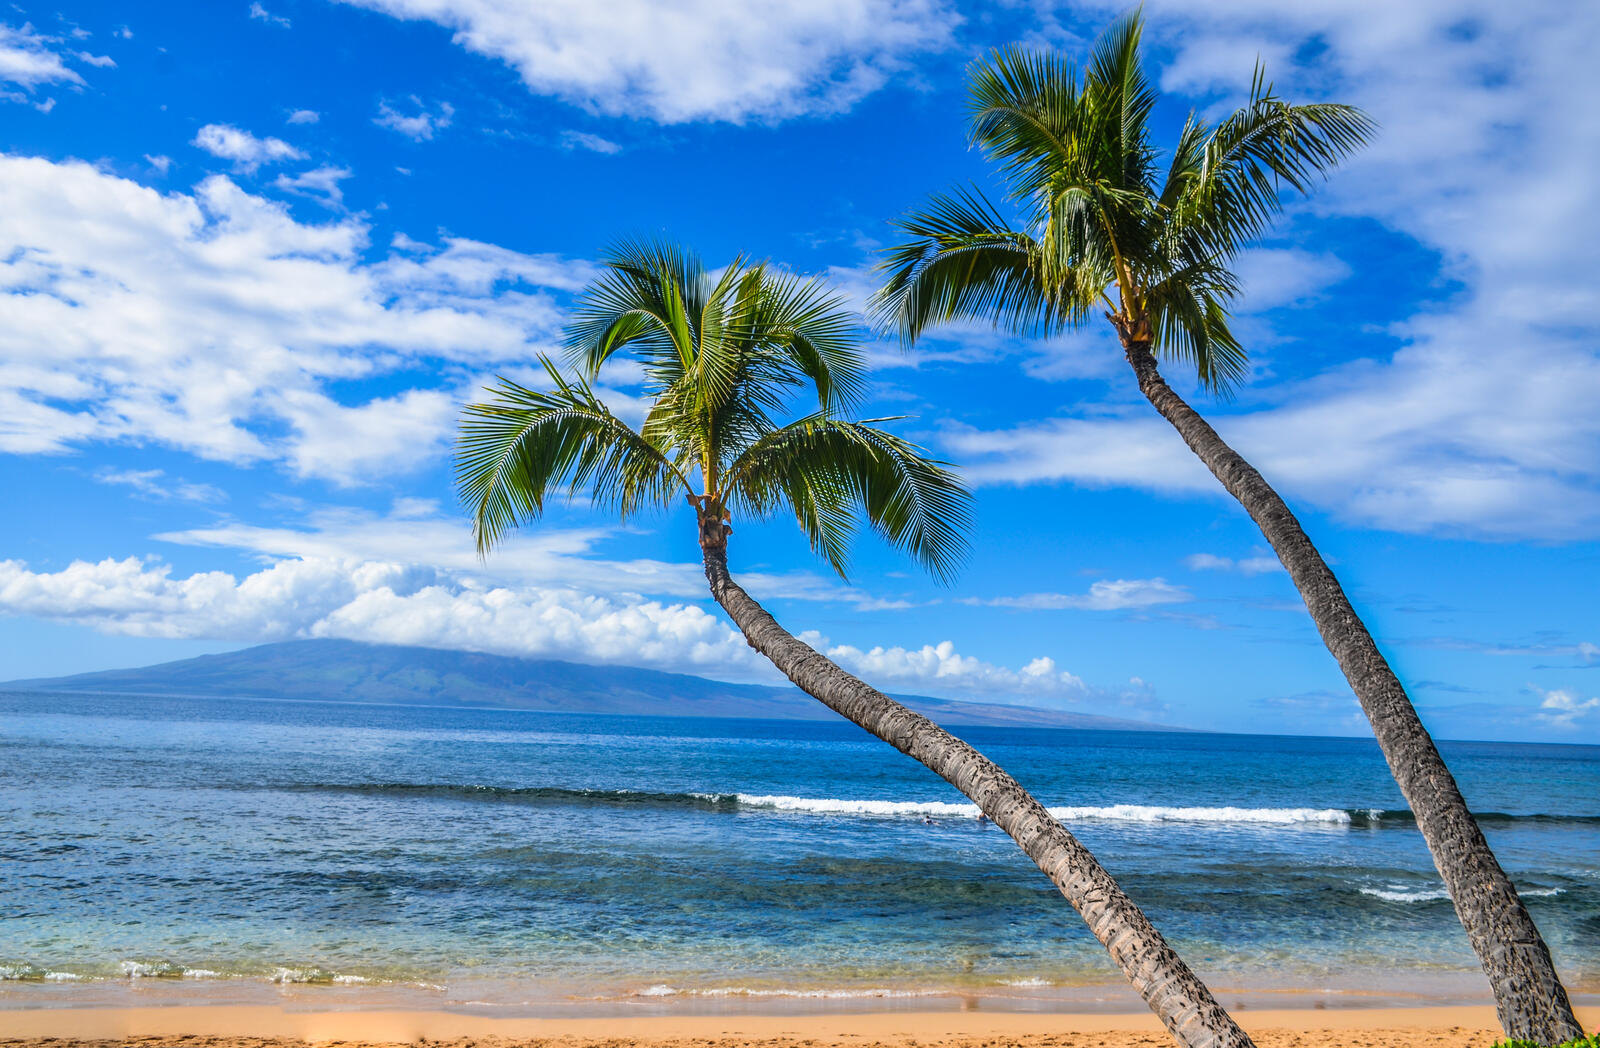 Обои Kaanapali Beach Maui Hawaii на рабочий стол